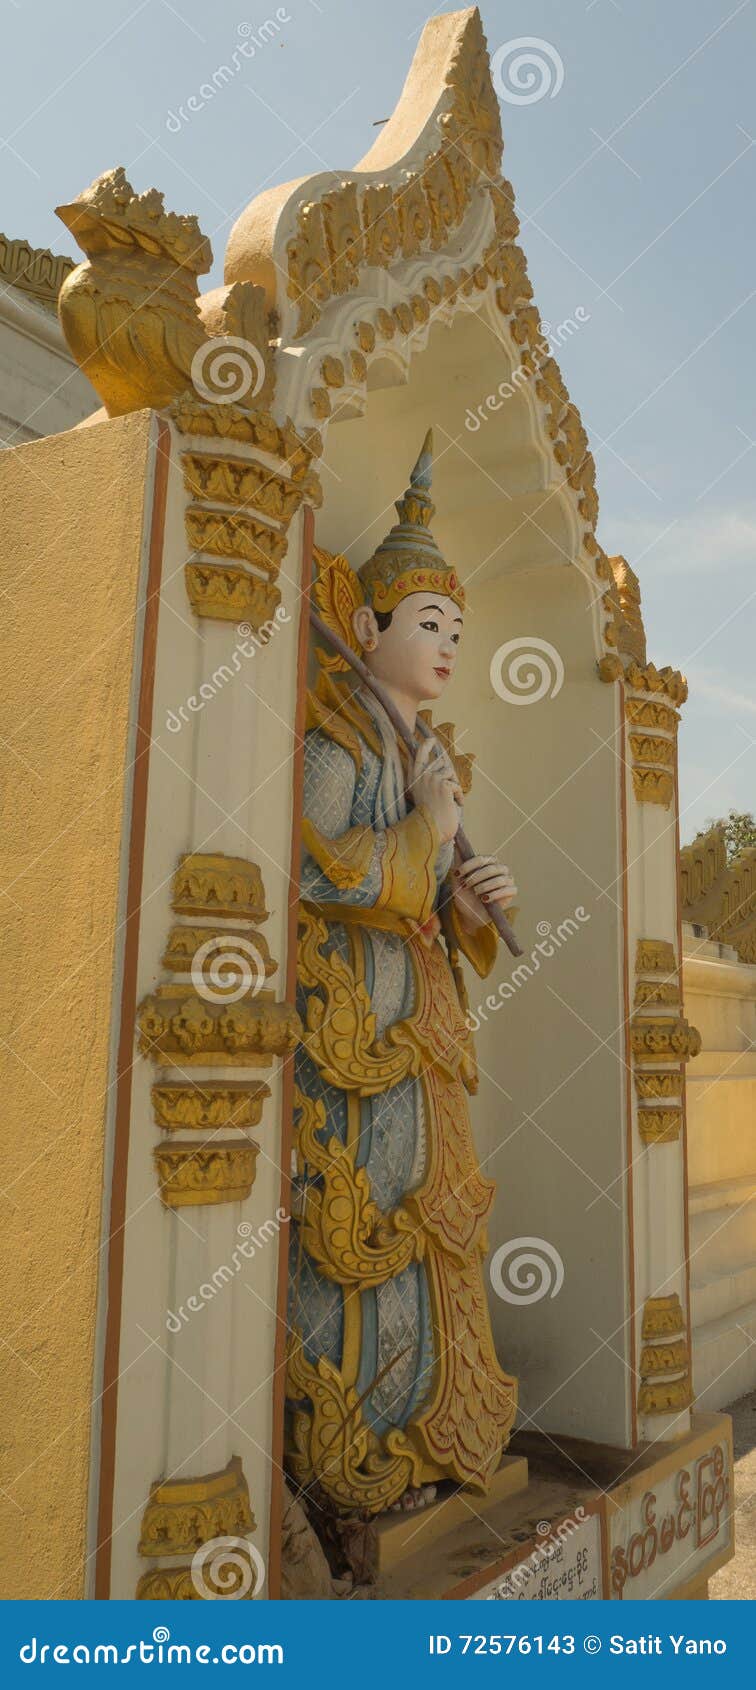 Lord Buddha o divinità. Lord Buddha o le divinità nella posizione del Myanmar Birmania visita